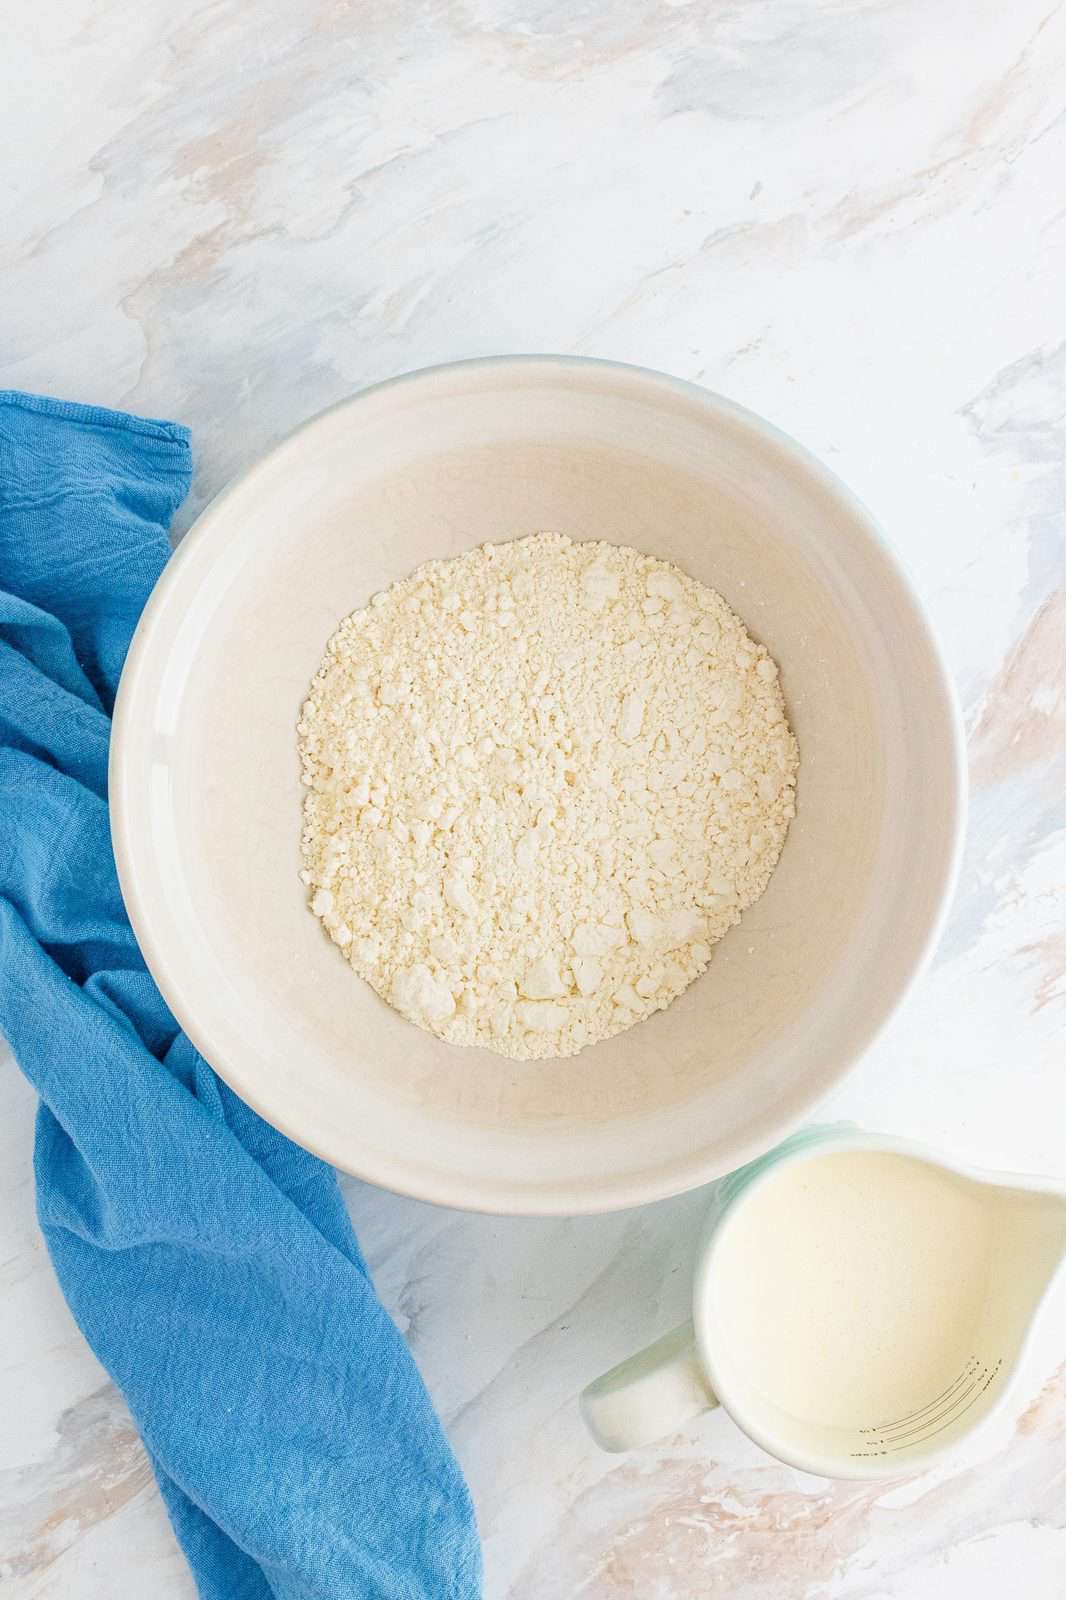 self-rising flour in a white bowl.